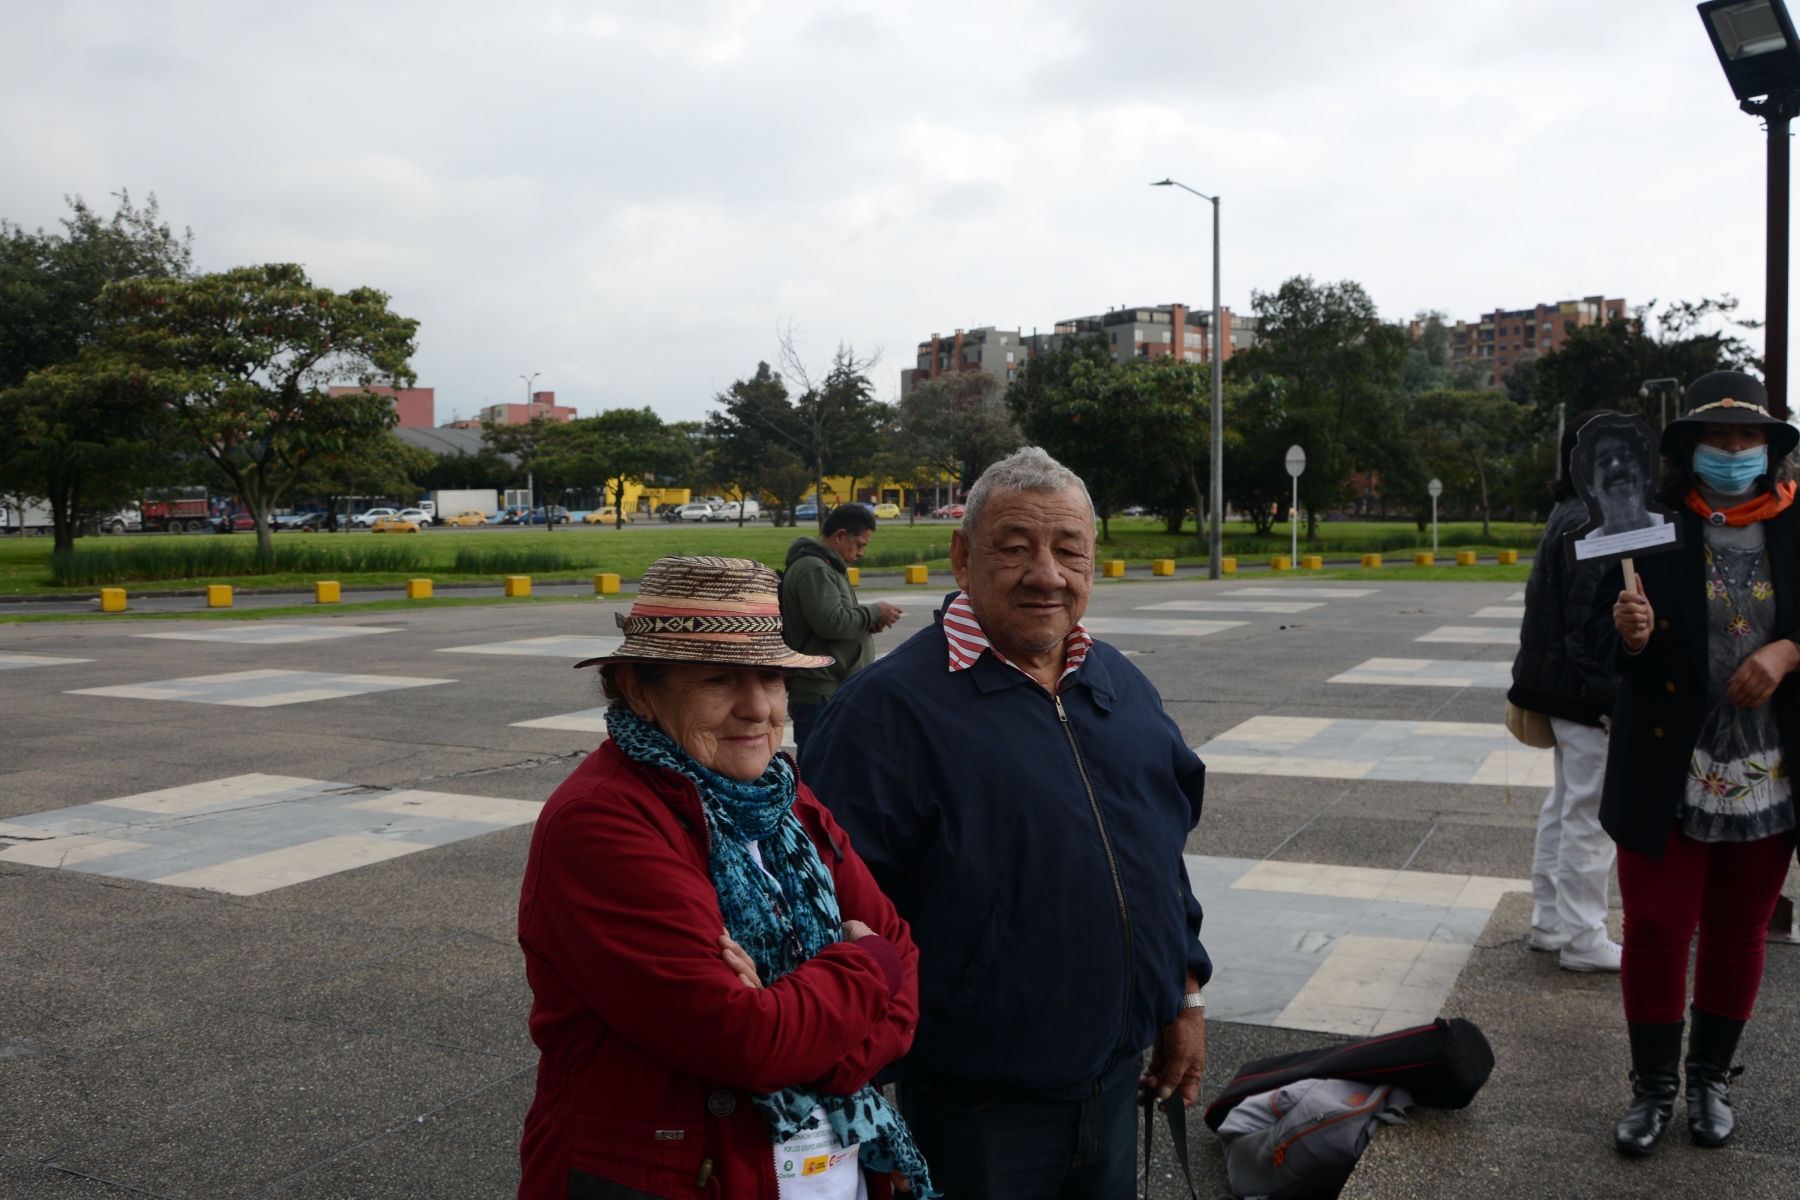 Plantón por nuestros desaparecidos, Bogotá